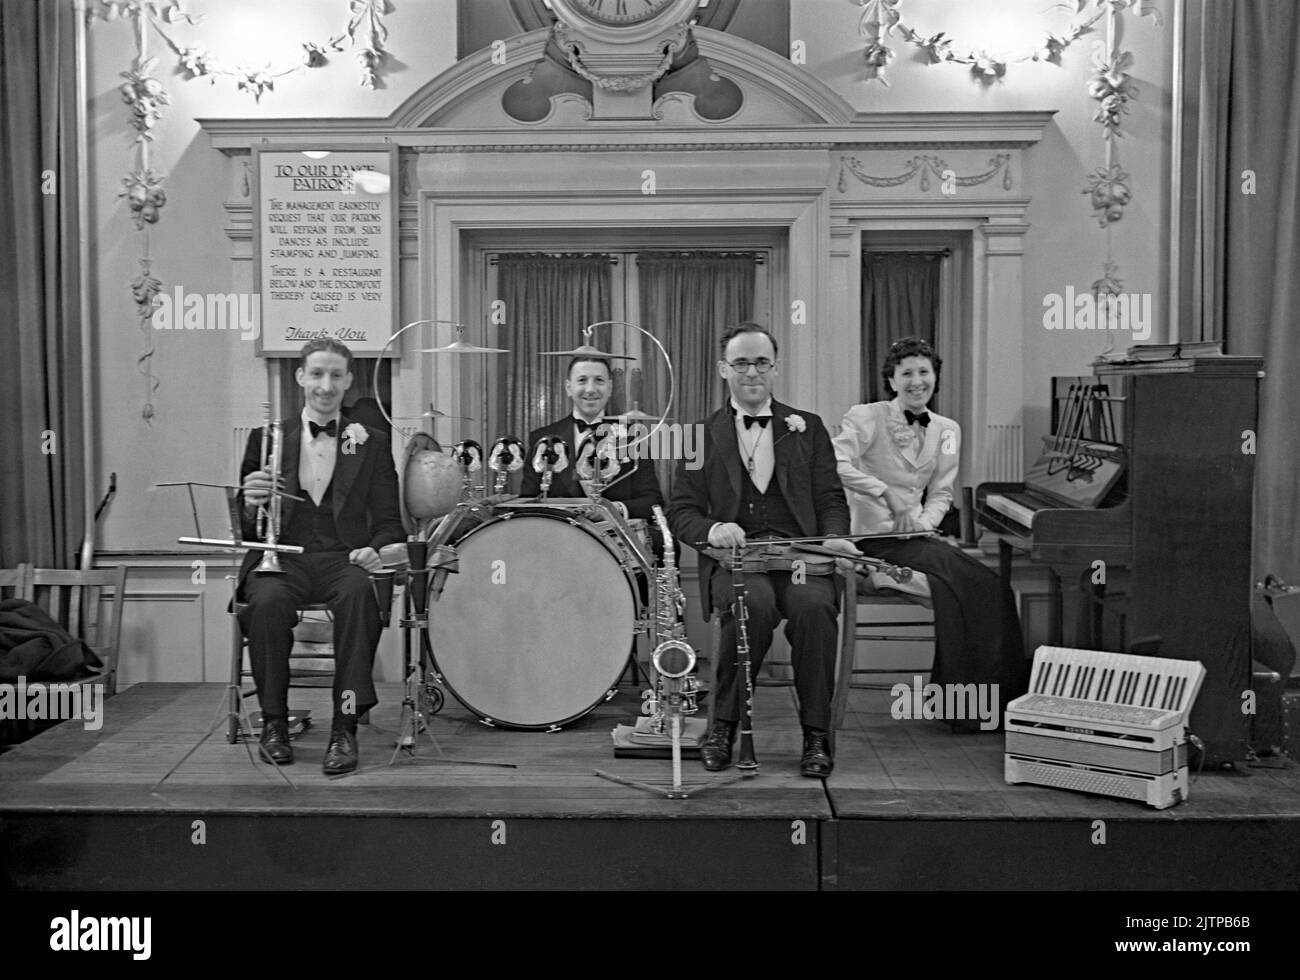 Una banda de baile británica de cuatro piezas, con miembros del De Berrys Trio, en el escenario en un baile benéfico de caridad en ayuda de la NSPCC (Sociedad Nacional para la Prevención de la Crueldad a los Niños) en un hotel de Londres, Inglaterra, Reino Unido en 1939. El letrero detrás de la banda pide que los bailarines se abstengan de “dar sellos y saltar”. Las primeras bandas de danza y swing tuvieron su apogeo en el Reino Unido durante los años 1920s–30s. Las bandas tocaban en los salones de baile y en los salones de baile del hotel. Tocaban música melódica y de buen tiempo y los jugadores individuales tocaban en varias bandas. Esta imagen es de un negativo de vidrio antiguo, una fotografía de la época 1930s. Foto de stock